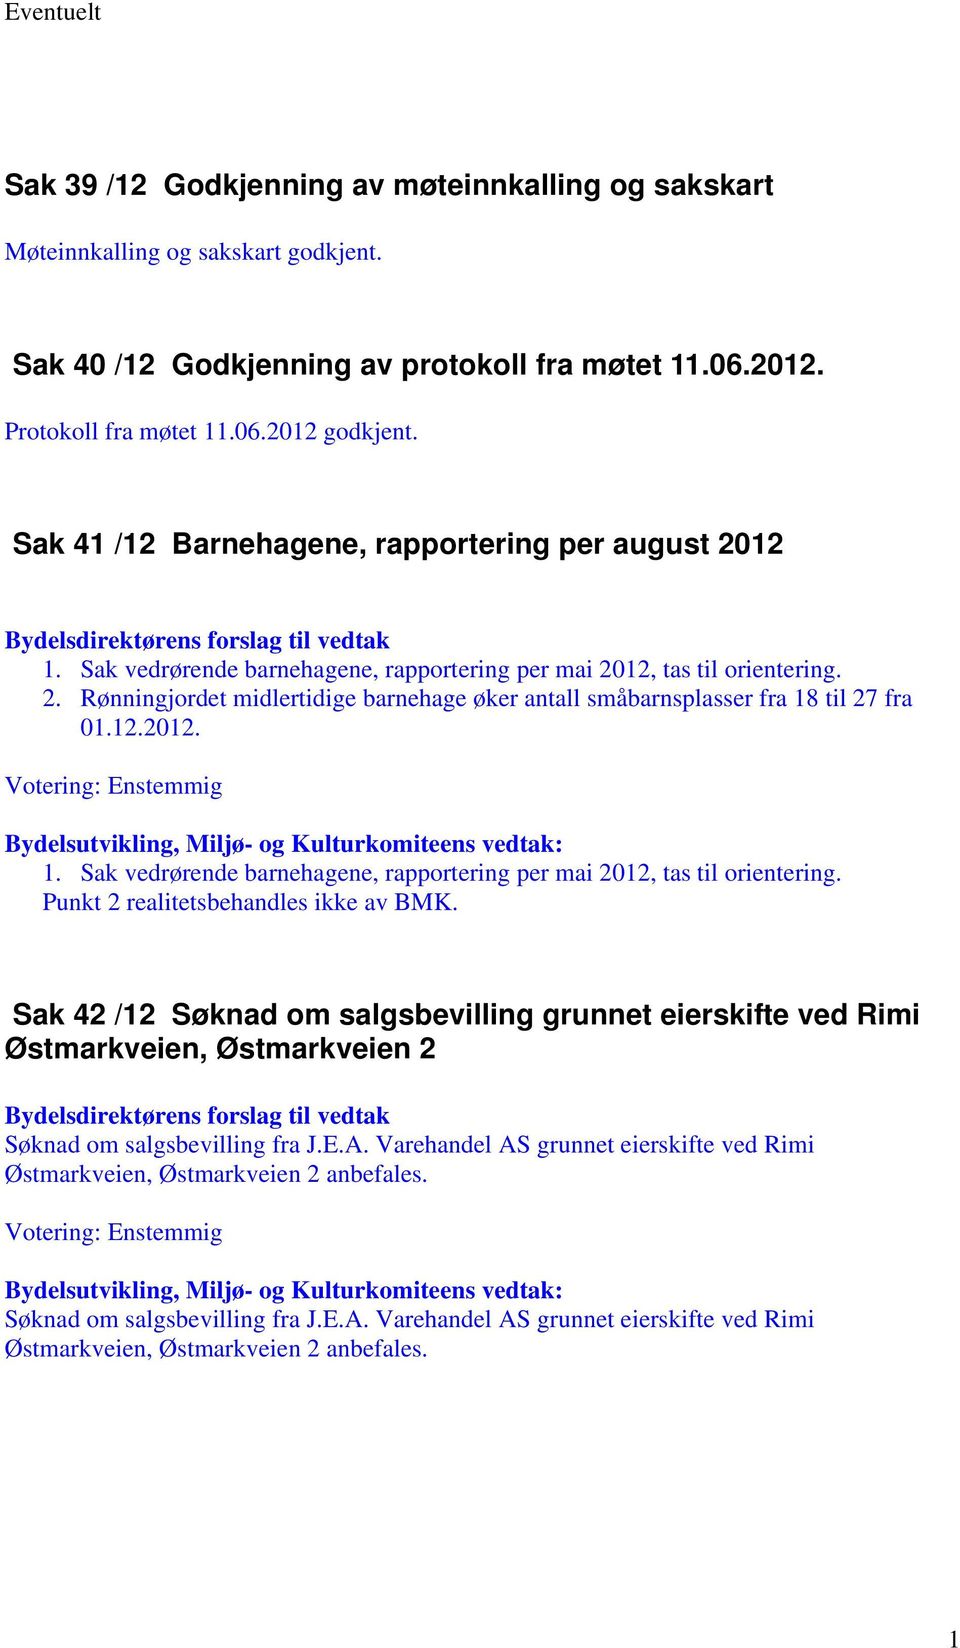 12.2012. 1. Sak vedrørende barnehagene, rapportering per mai 2012, tas til orientering. Punkt 2 realitetsbehandles ikke av BMK.